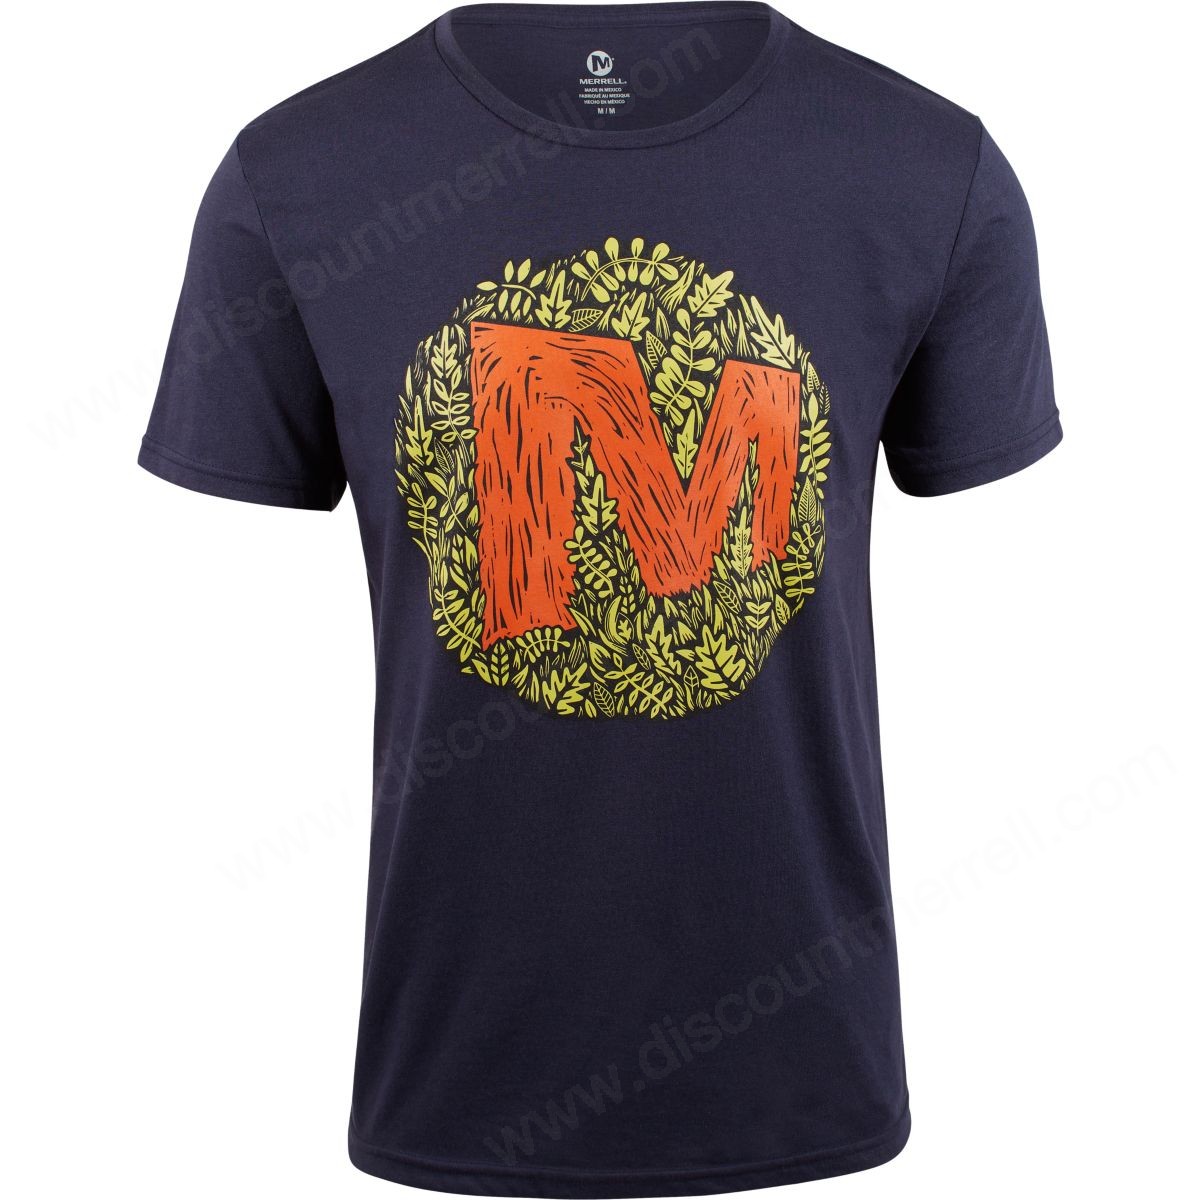 Merrell Man's Merrell Forest Shirts Navy - Merrell Man's Merrell Forest Shirts Navy